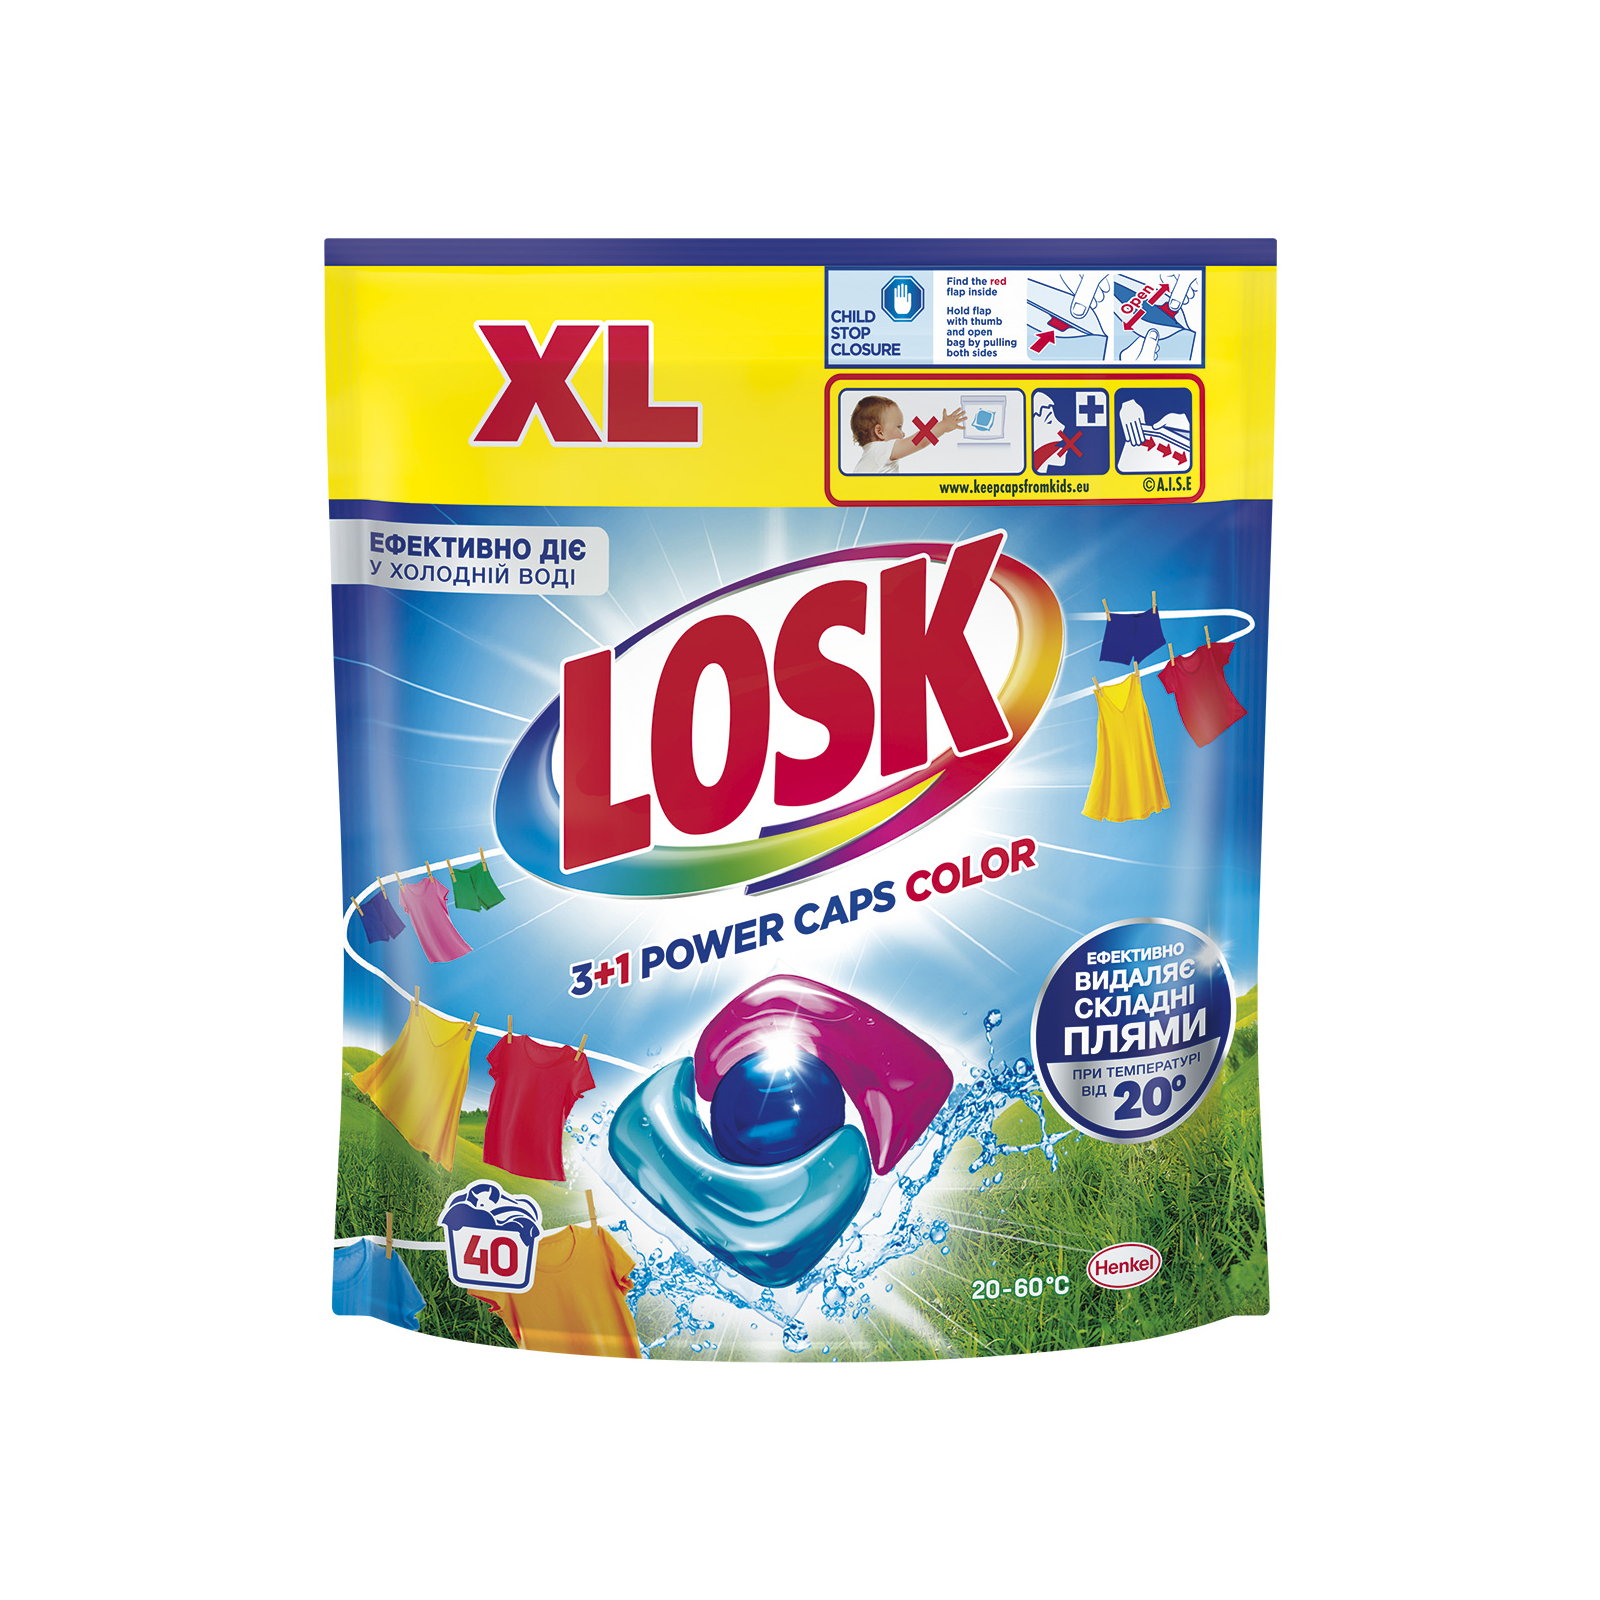 Капсулы для стирки Losk 3+1 Power Caps Color 40 шт. (9000101802016)